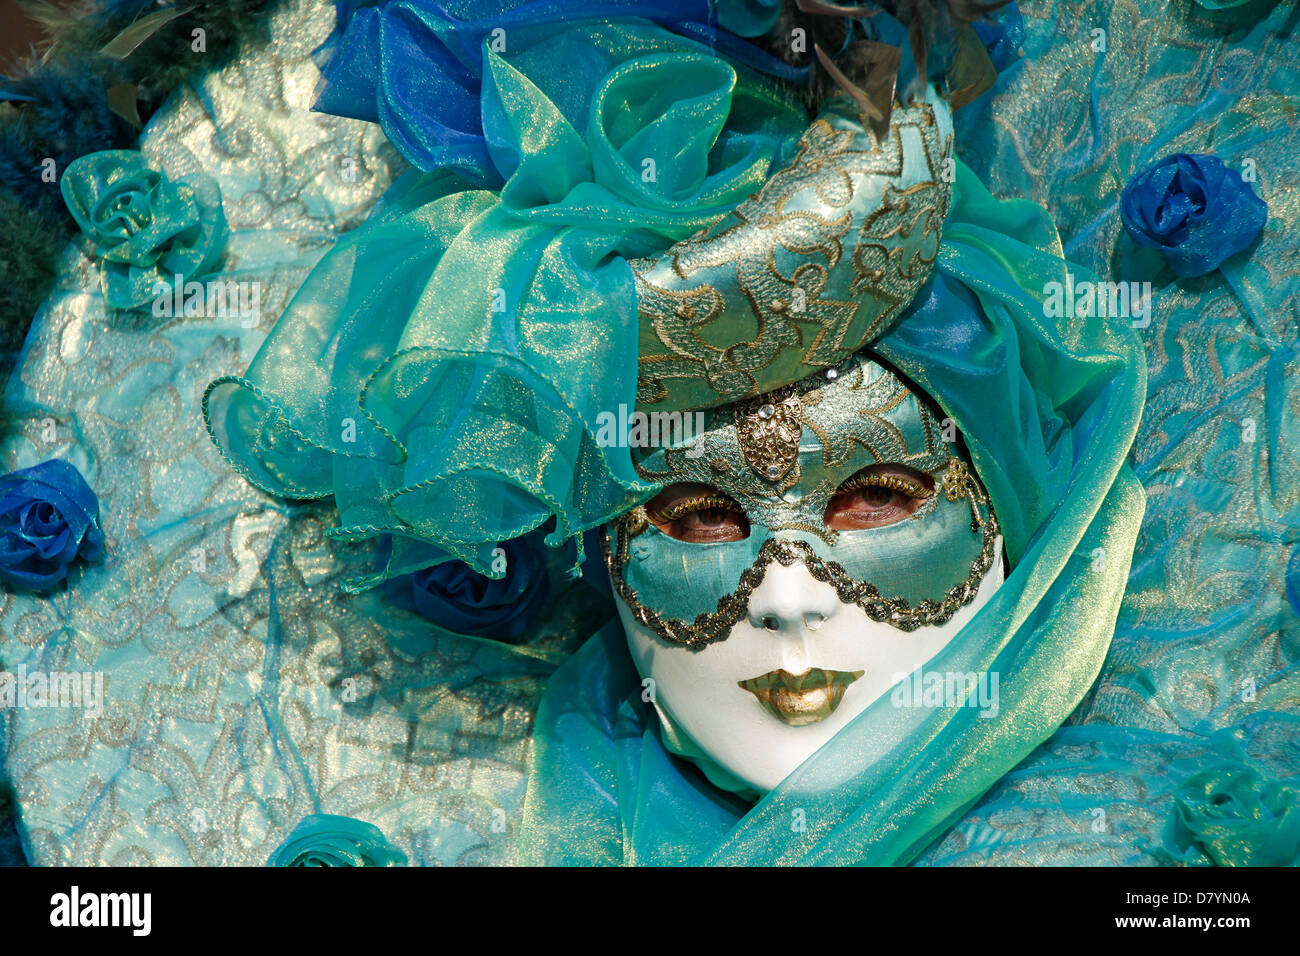 Máscara De Oro Tradicional Carnaval Veneciano. Venecia, Italia Europa  Fotos, retratos, imágenes y fotografía de archivo libres de derecho. Image  46859733